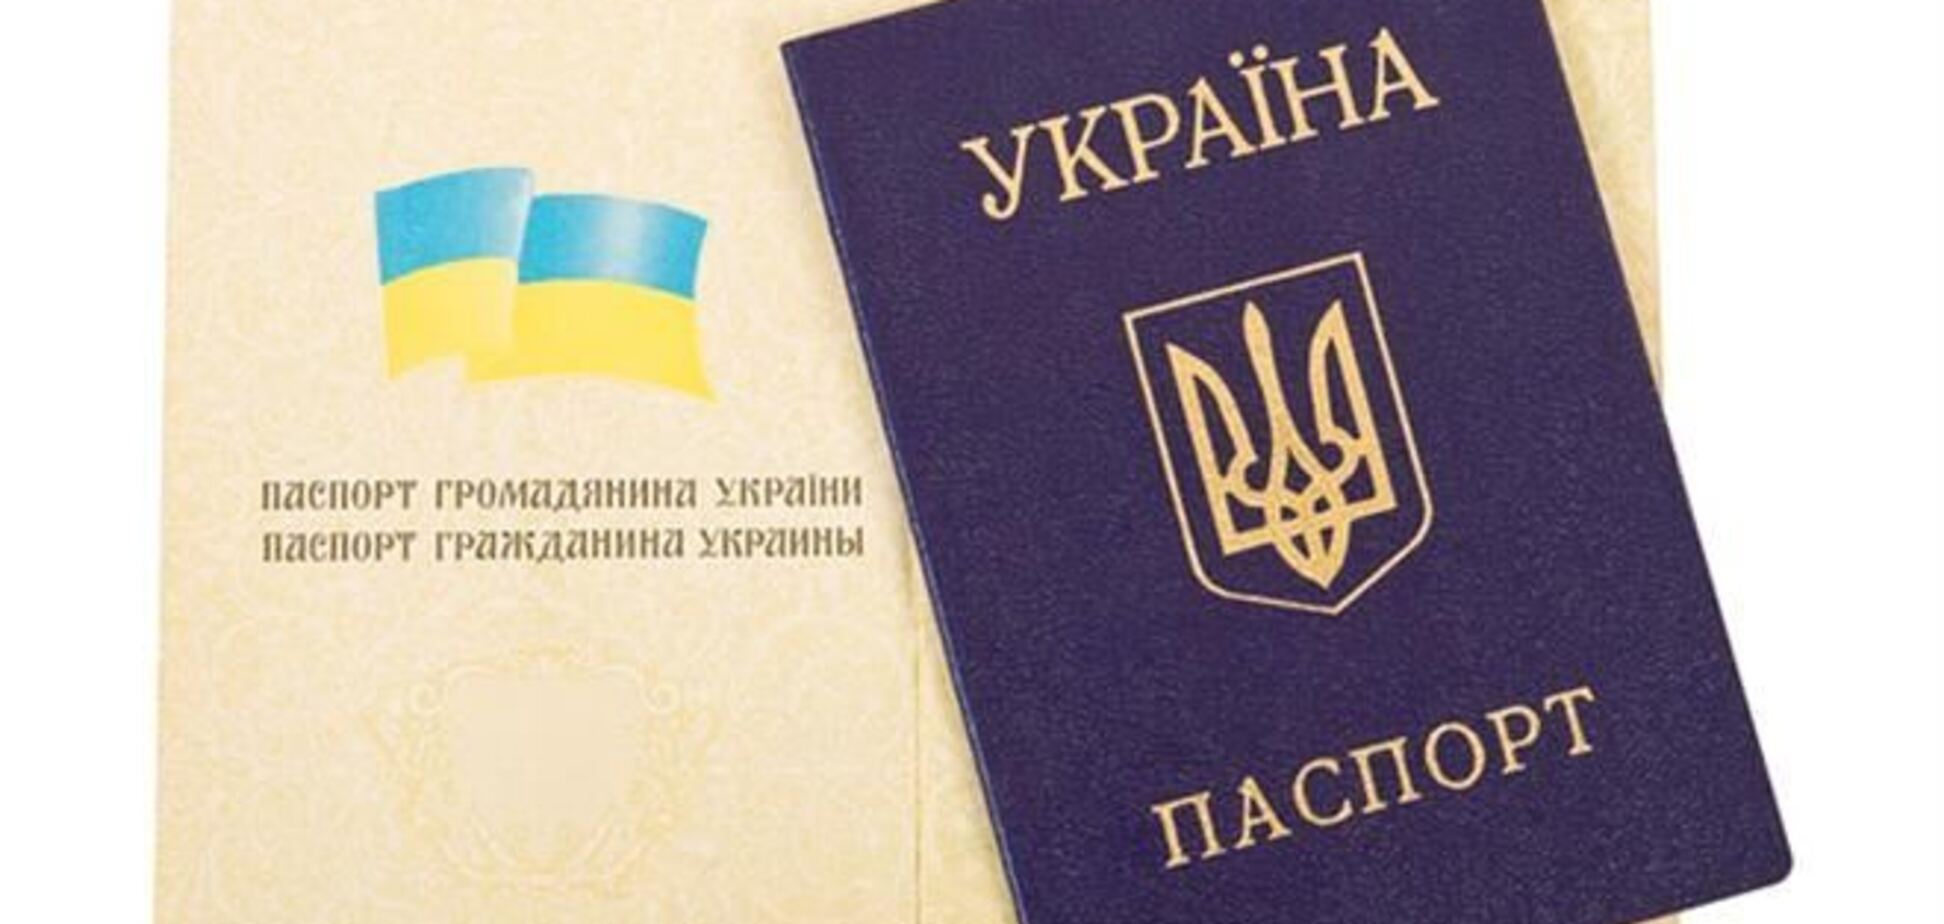 Украинцы смогут жить в Крыму только с видом на жительство